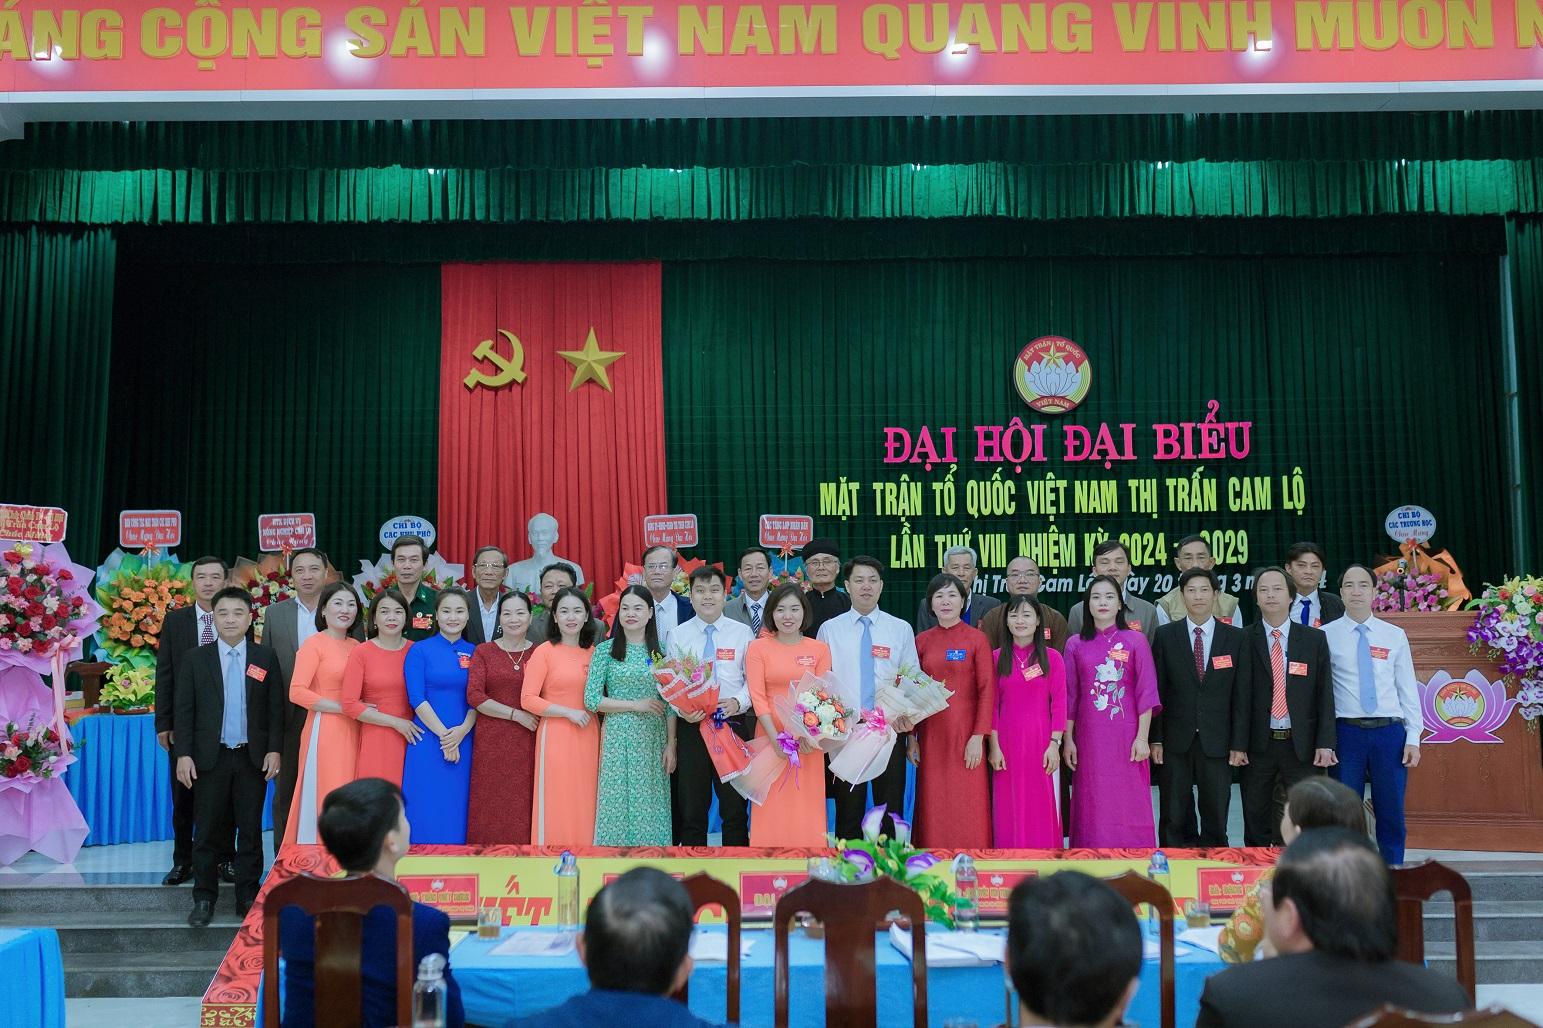 Đại hội đại biểu Mặt trận Tổ quốc Việt Nam thị trấn Cam Lộ lần thứ VIII, nhiệm kỳ 2024 - 2029.